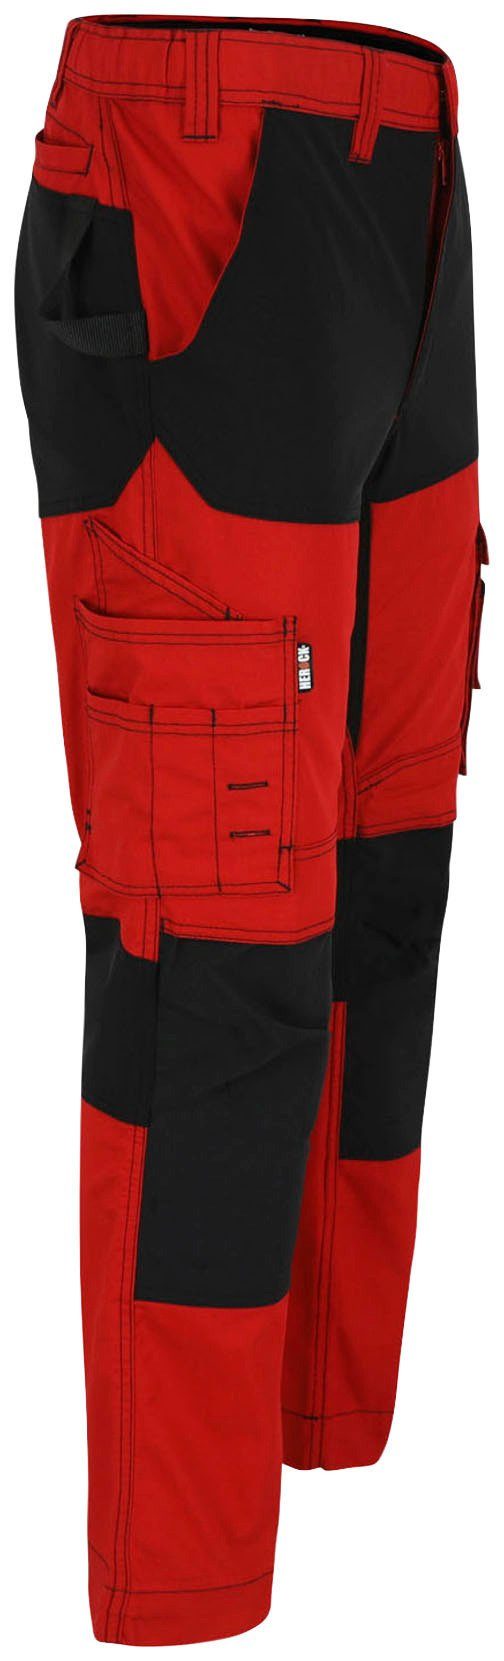 Hector Hoses verdeckter Knopf, verstärkte rot/schwarz Arbeitshose 4-Wege-Stretch, Herock Knietaschen Multi-Pocket,